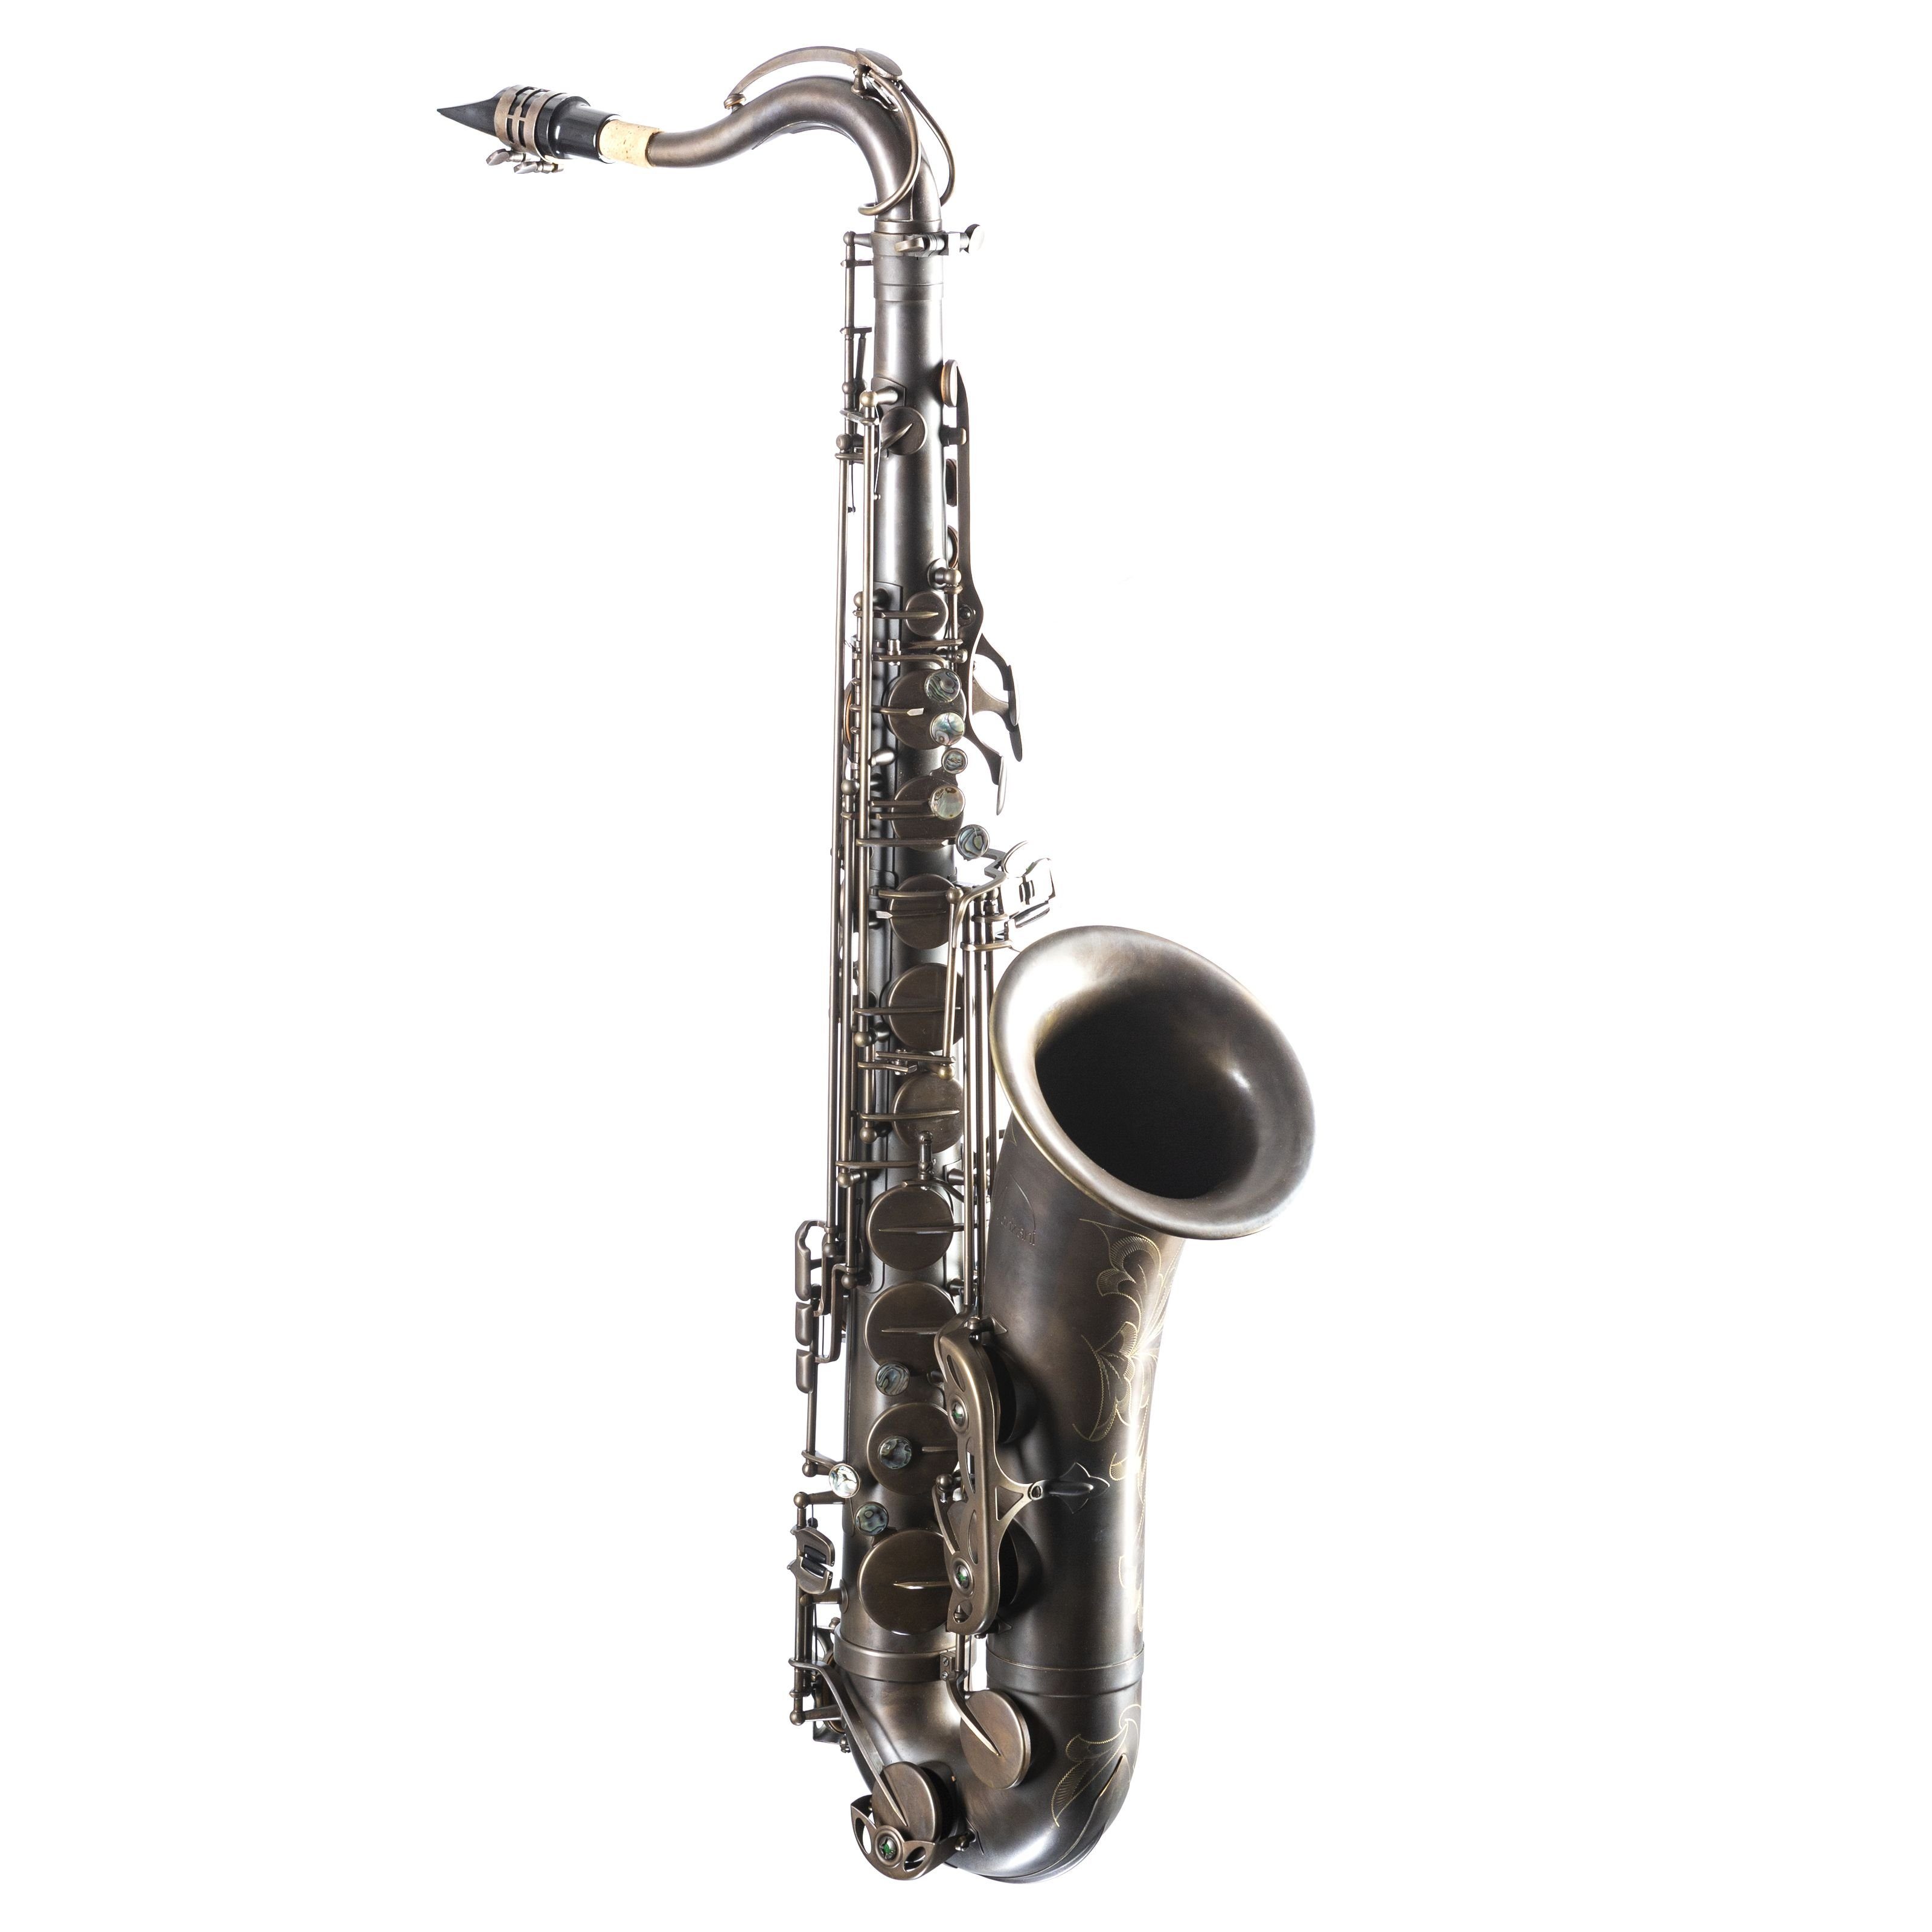 Monzani Saxophon, MZTS-580 Tenor-Saxophon, Unlackiert, Messingkorpus, Handgraviert, Vintage Sound, Inklusive Mundstück, Wischer, Koffer, Gurt, Ideal für Profis und Anfänger, Tenor-Saxophon, Messingkorpus, Handgraviert